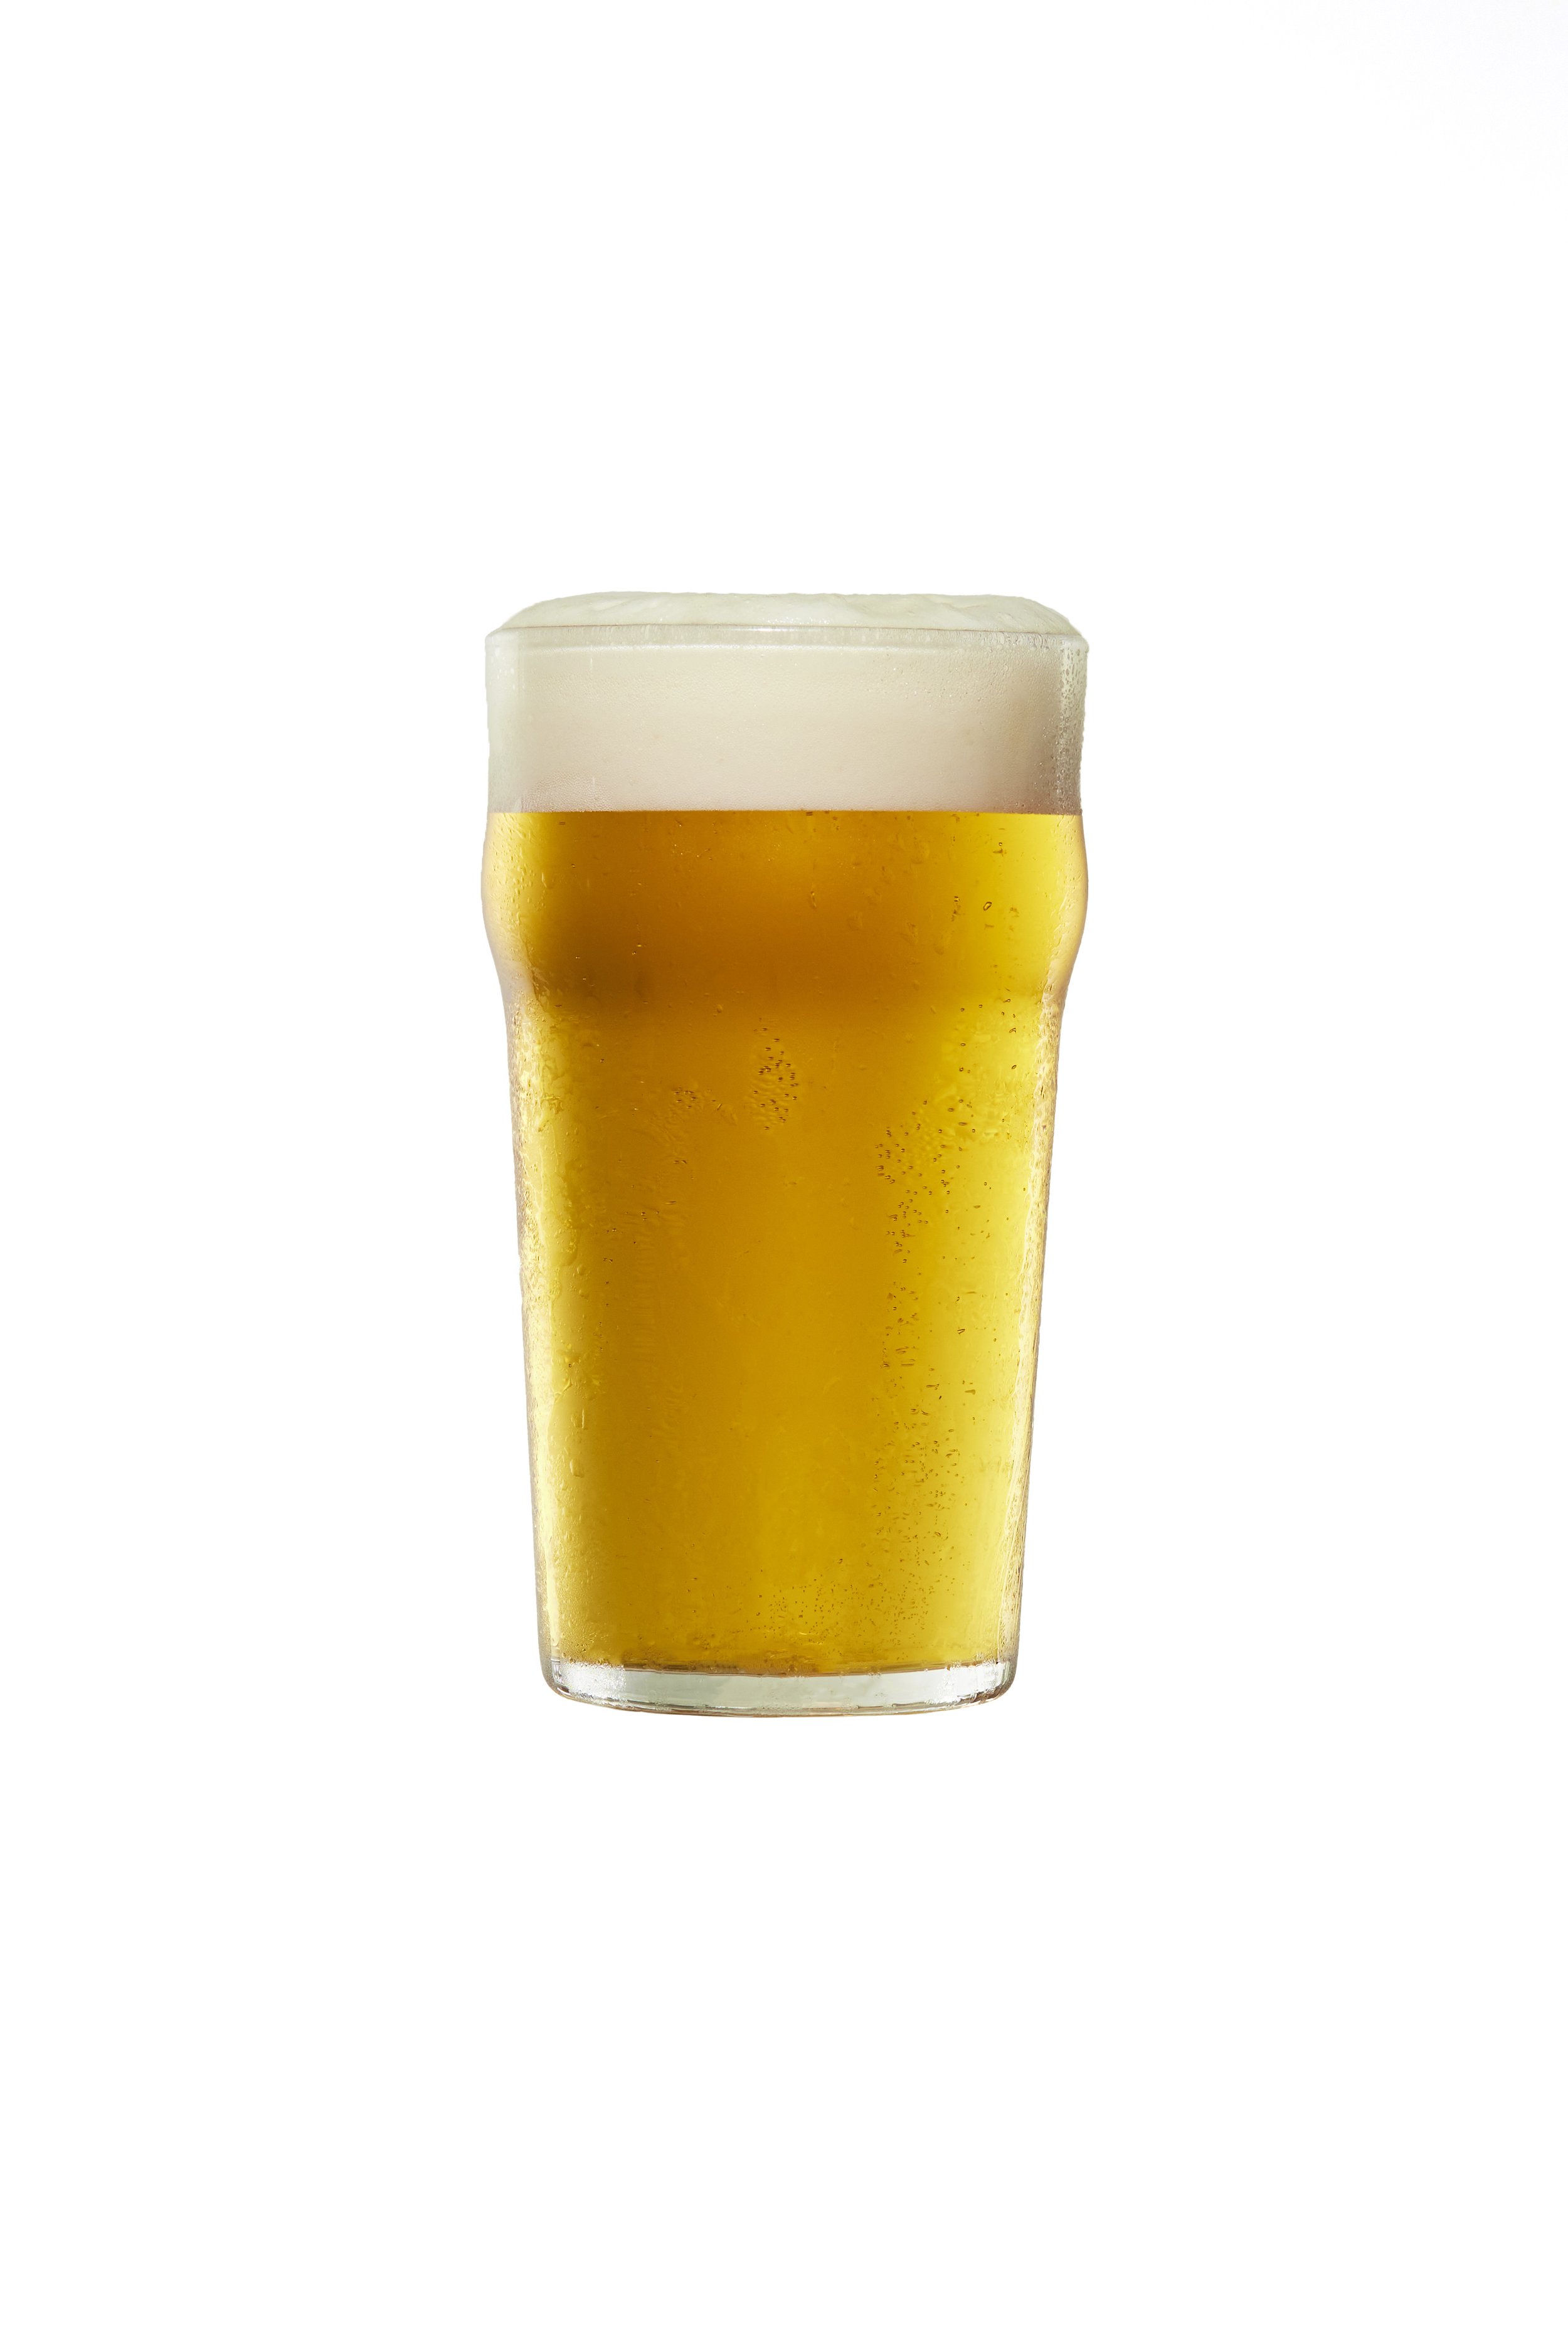 Beer_Test_0404238180 copy.jpg